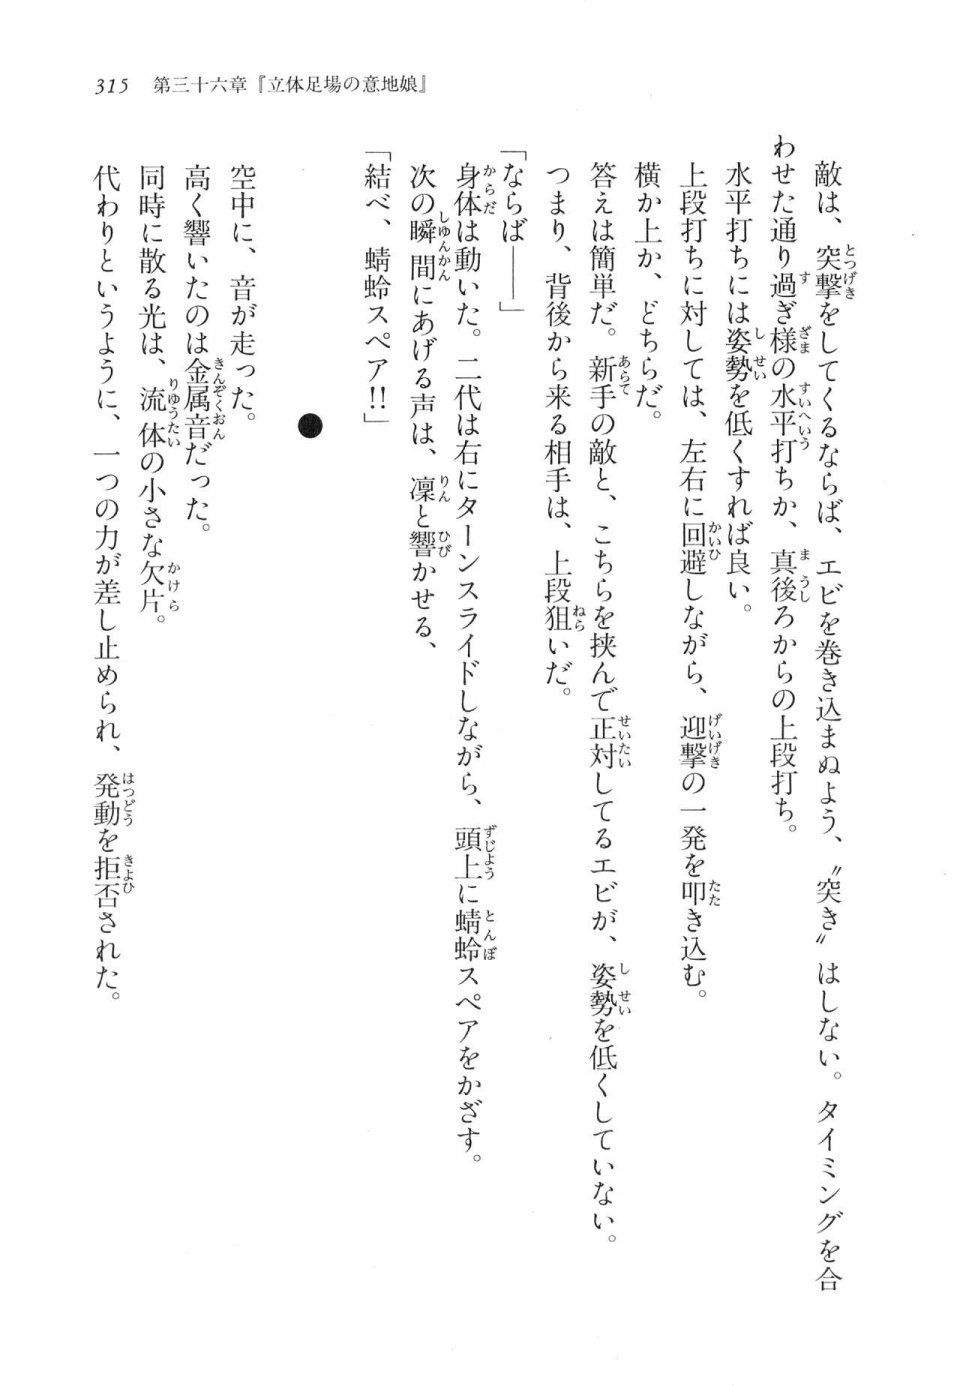 Kyoukai Senjou no Horizon LN Vol 17(7B) - Photo #315